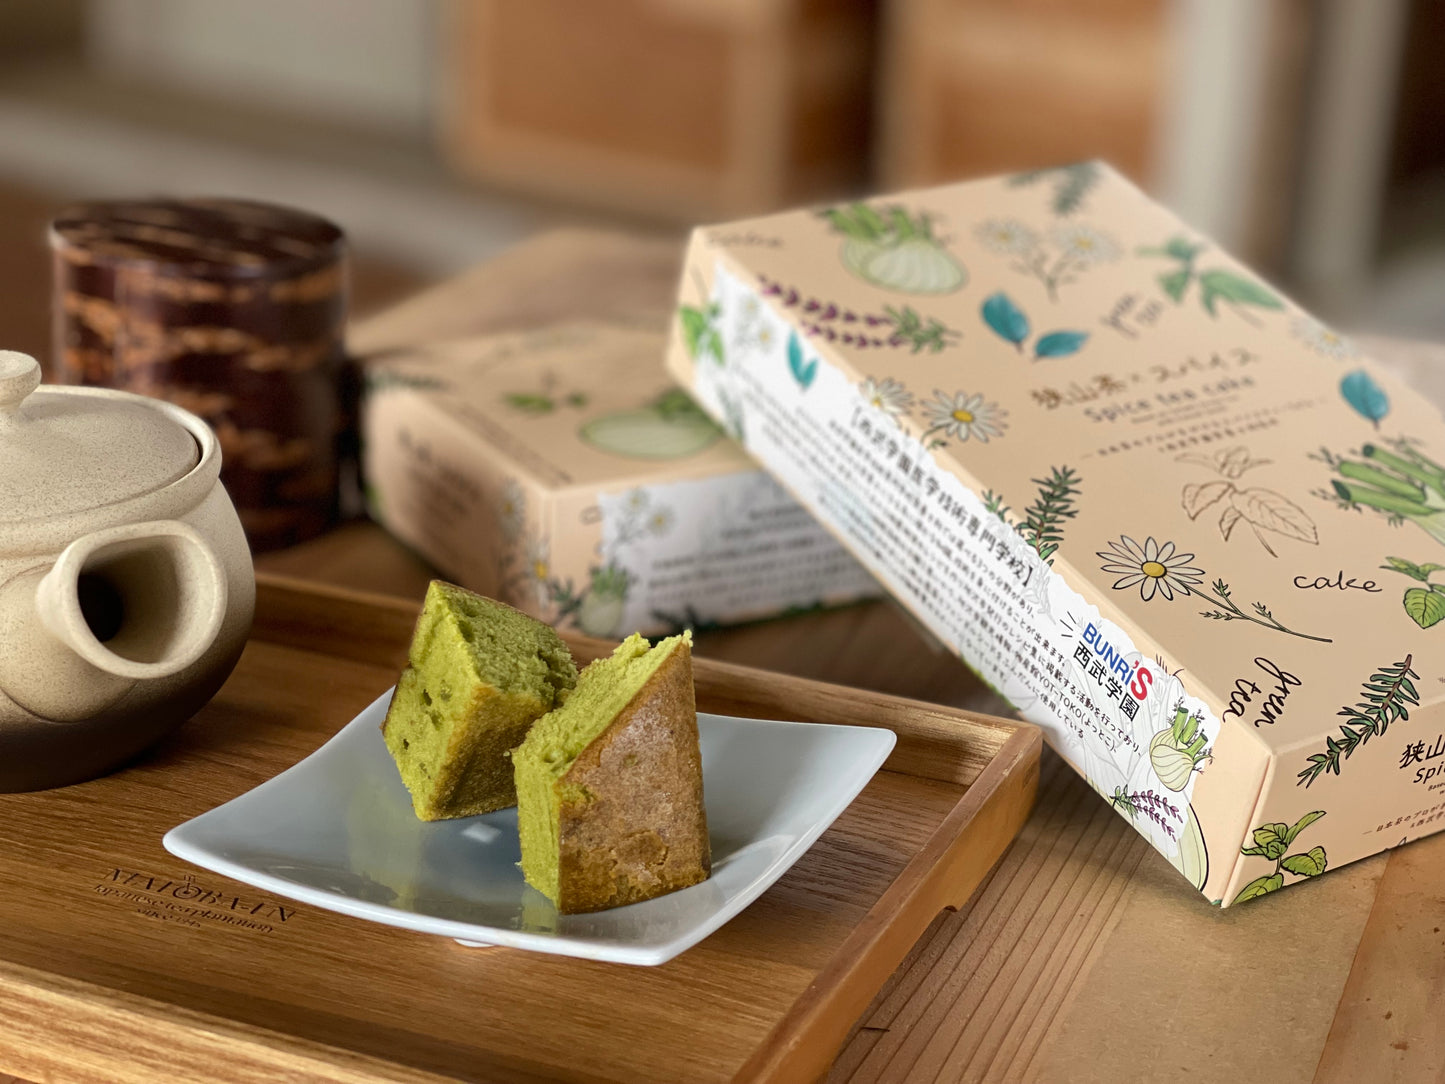 狭山茶×スパイス　Spice tea cake